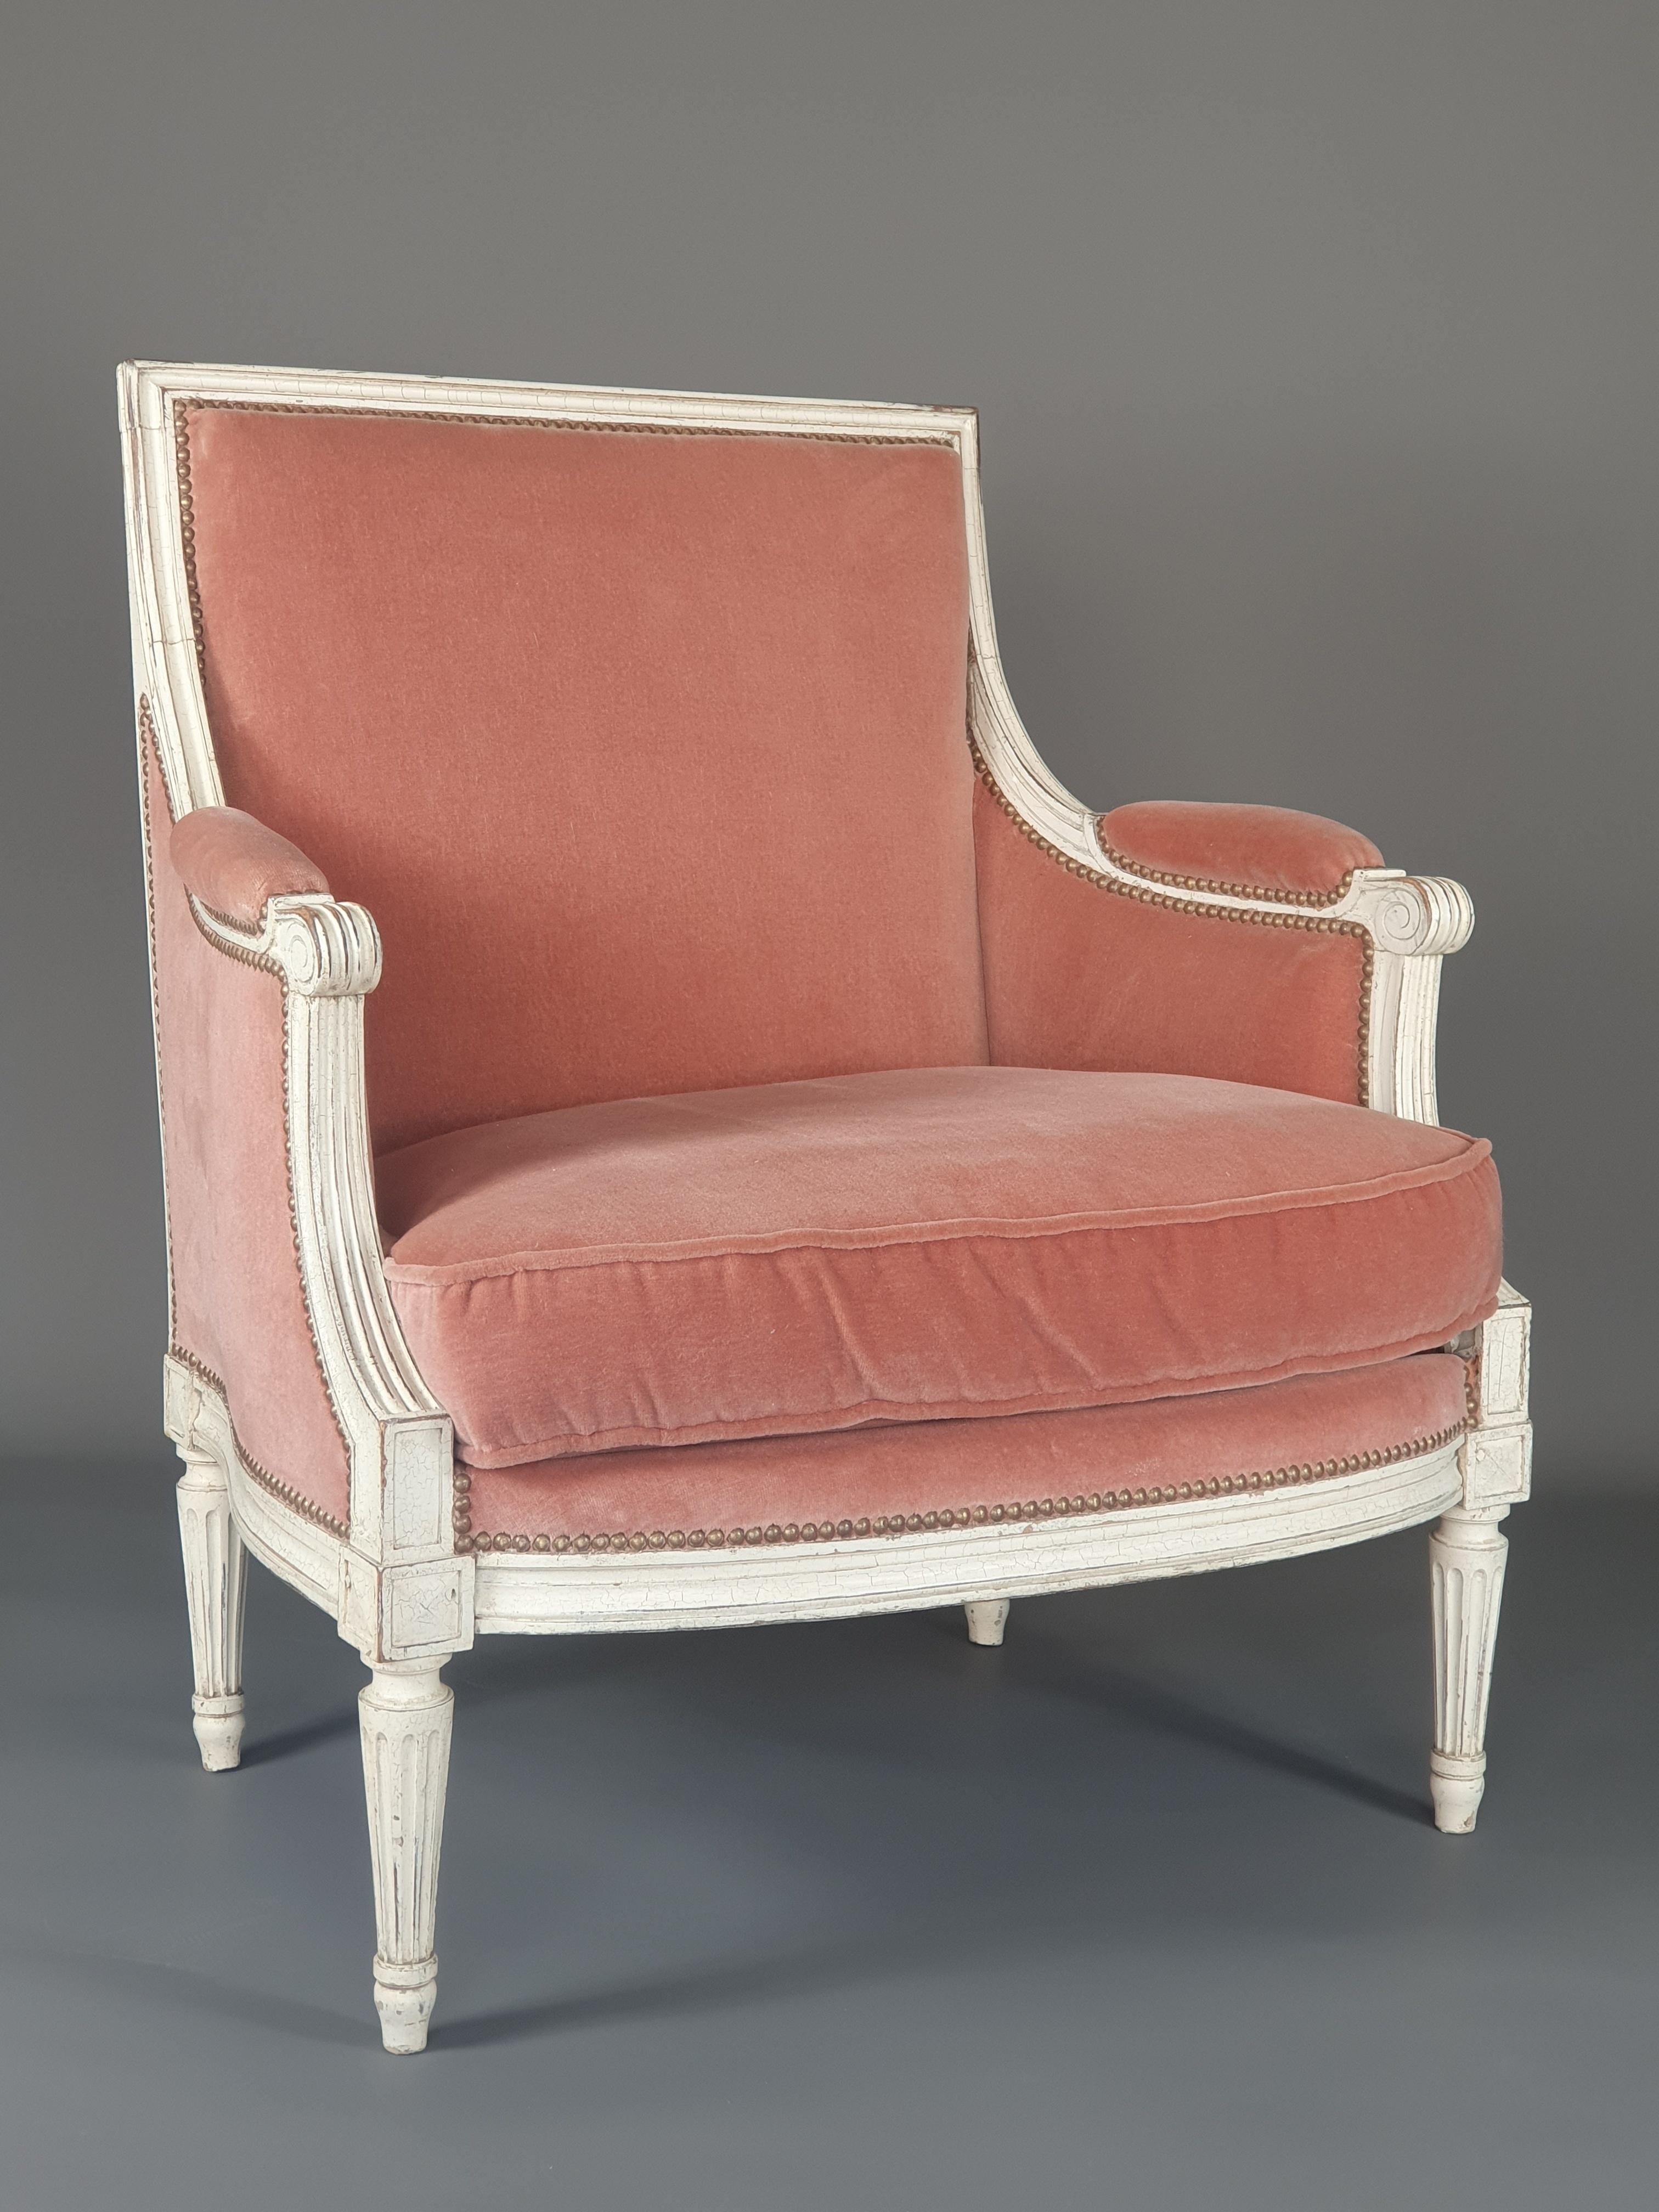 Belle marquise Louis XVI en bois laqué blanc et tapisserie en velours de laine vieux rose.

Siège de bonne qualité, entièrement chevillé, travail du 19e siècle.

Très bon état, quelques usures à la laque, tissu en parfait état.